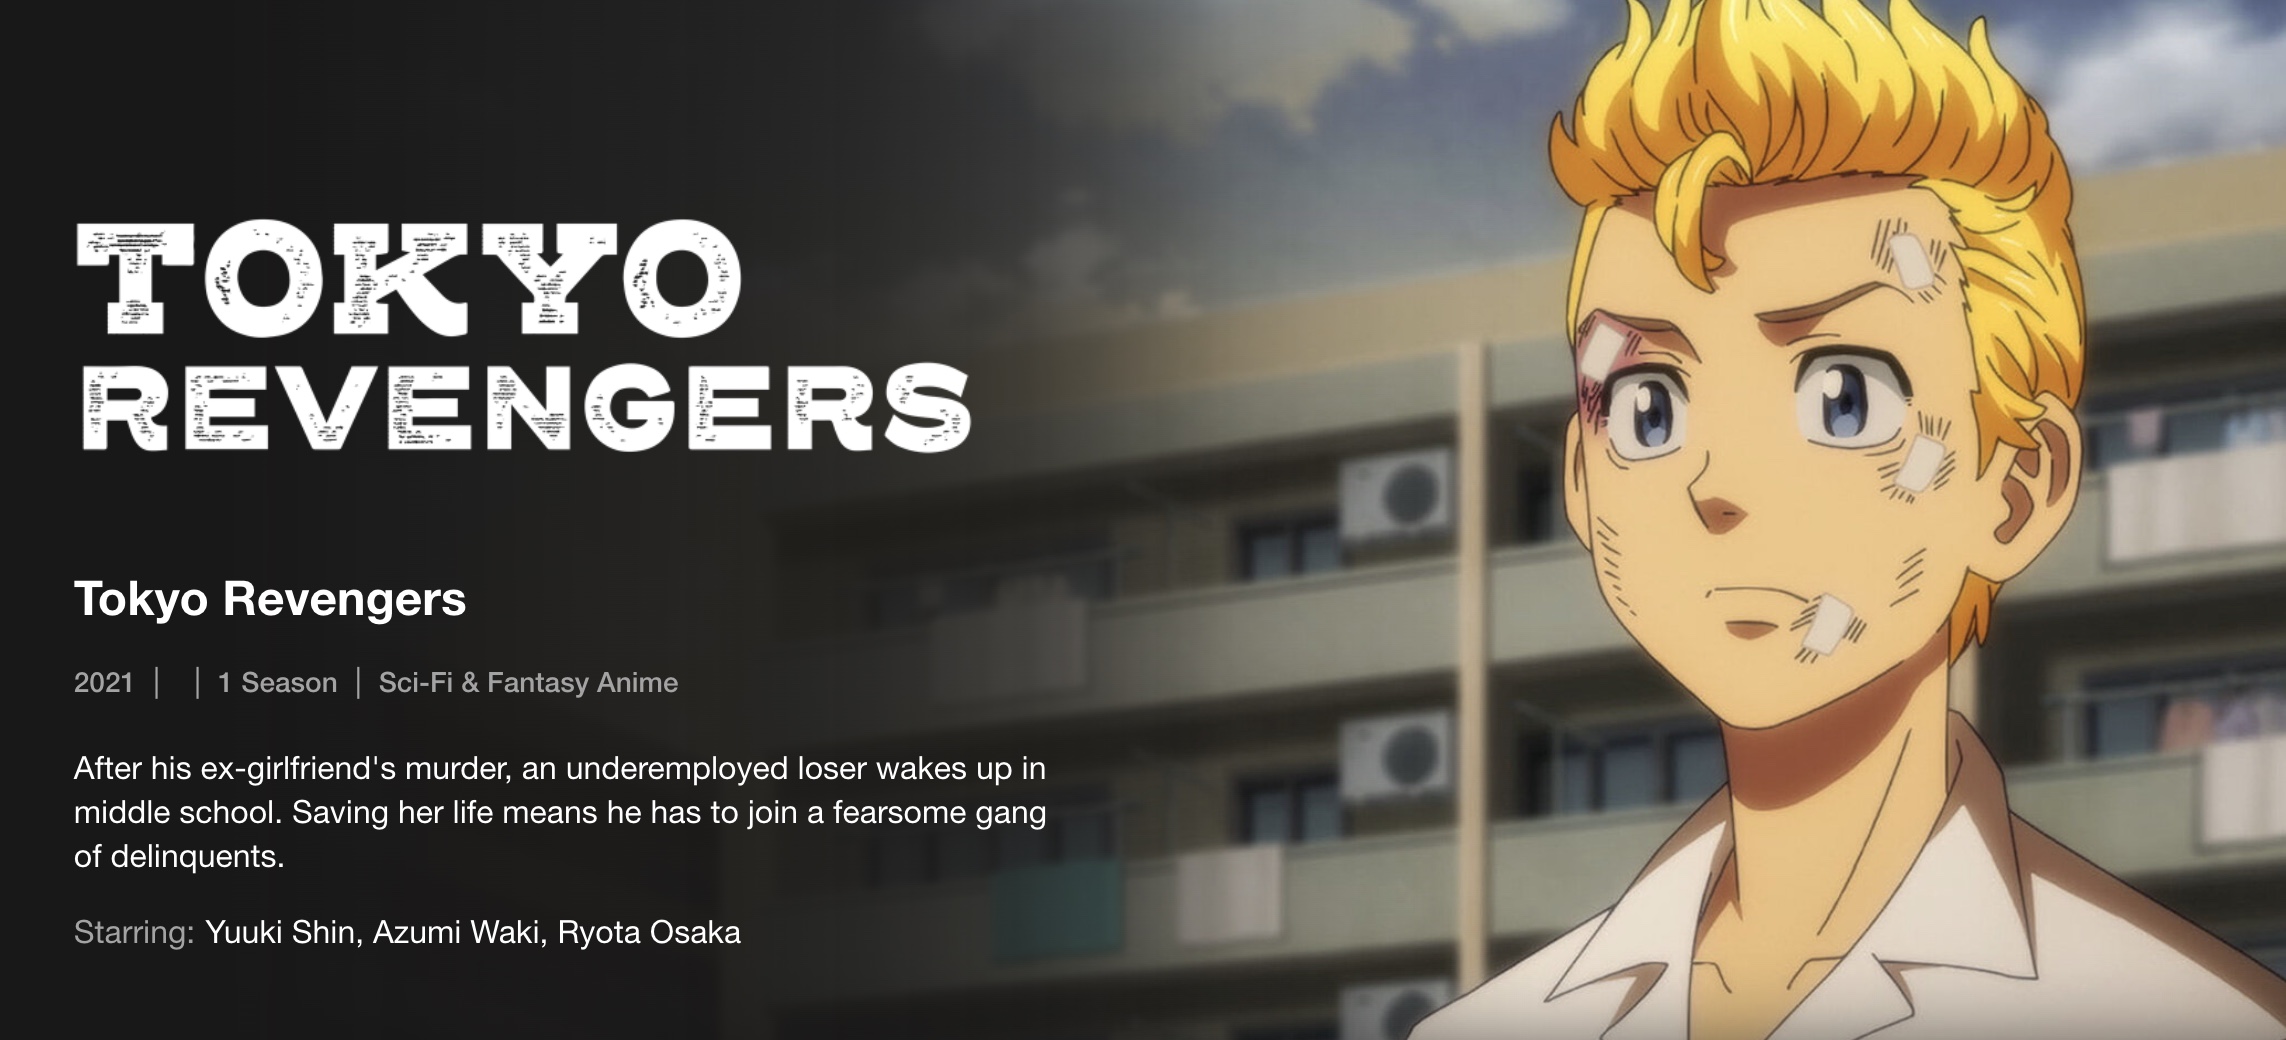 Tokyo Revengers on Netflix